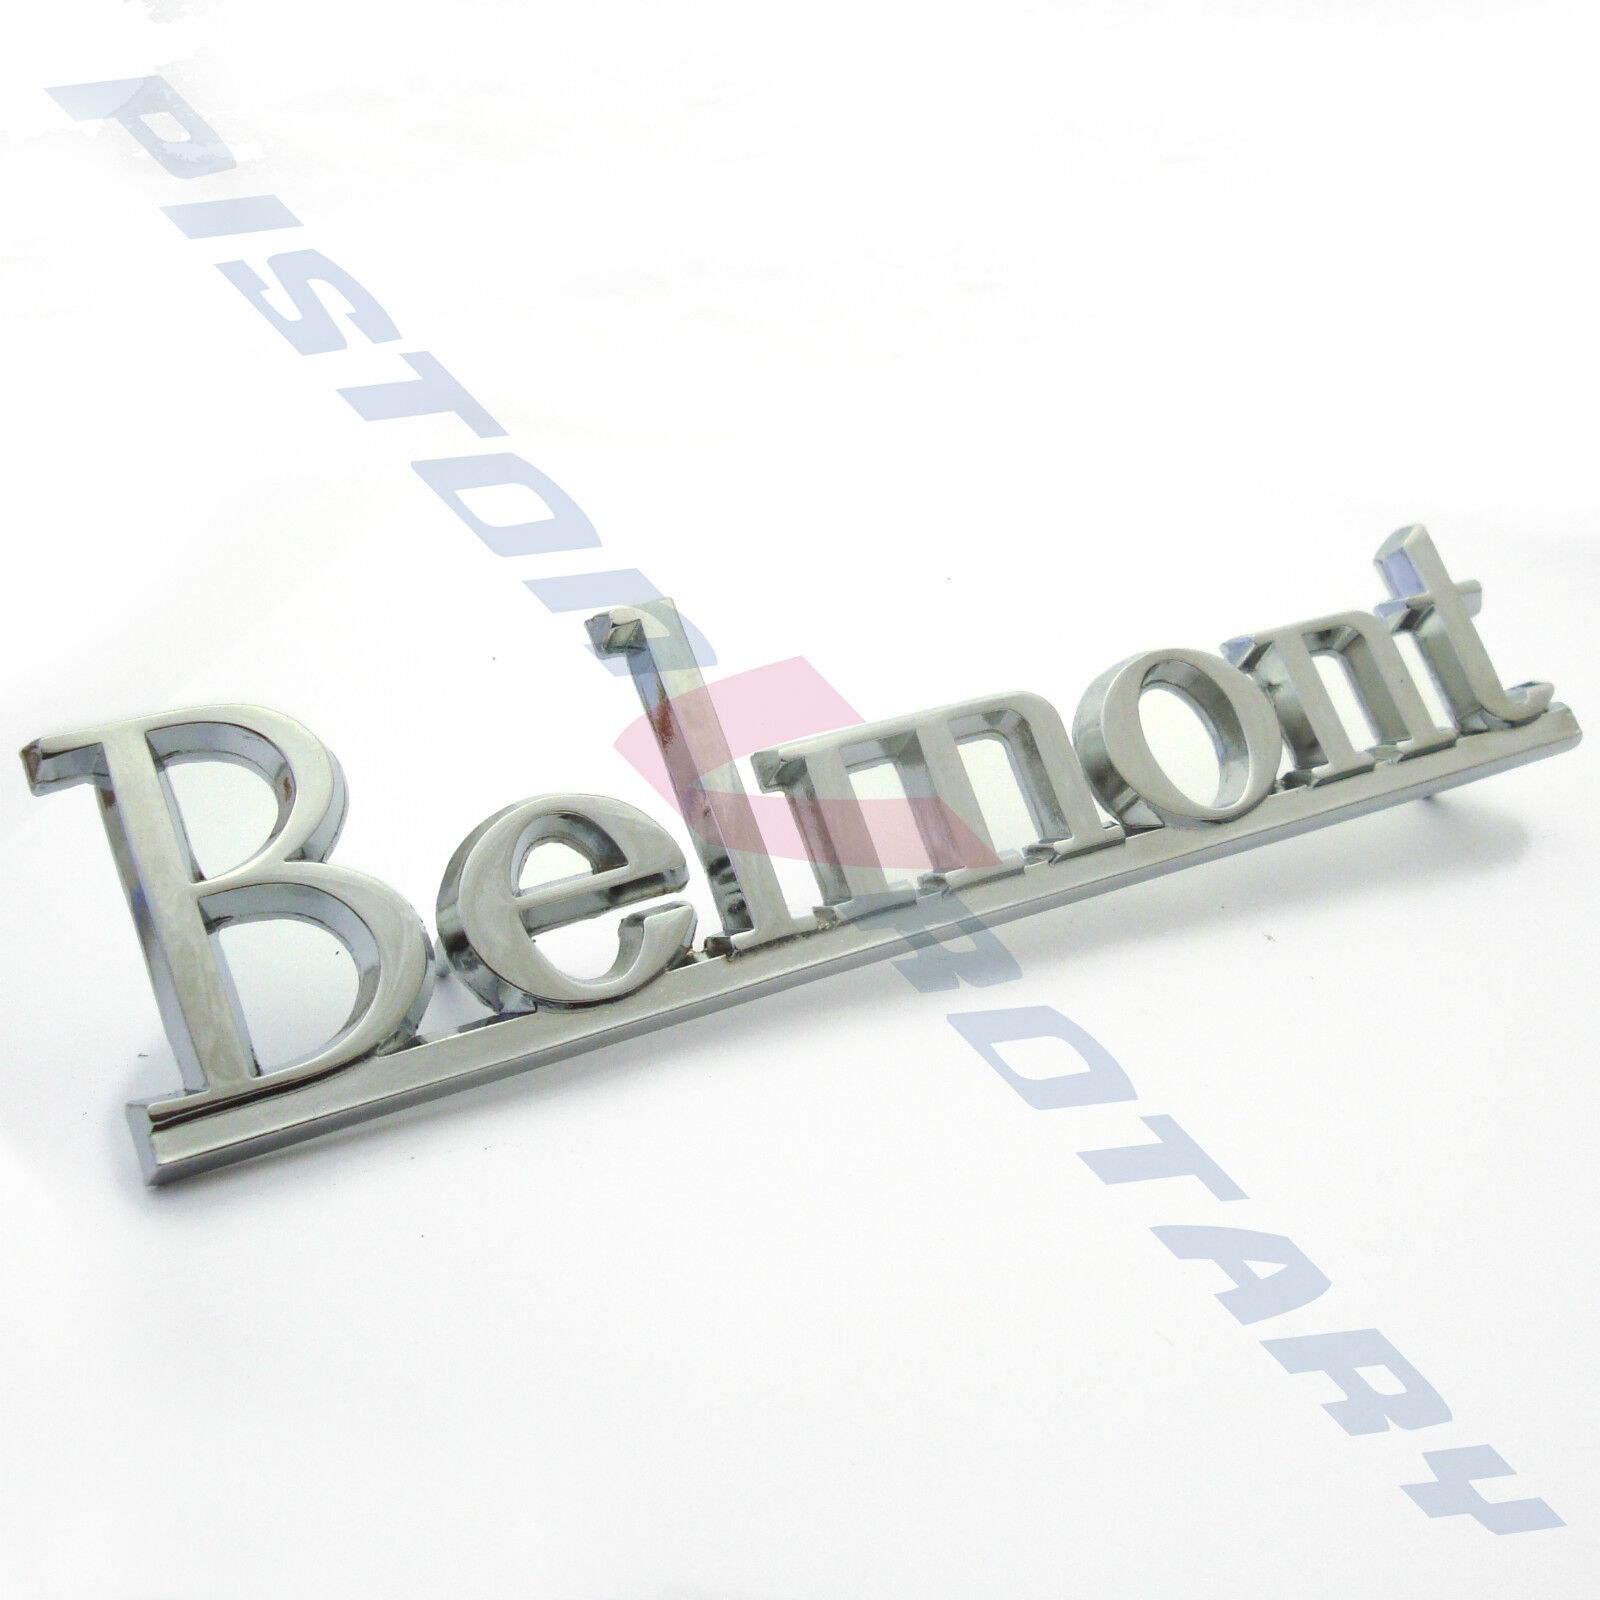 BELMONT Boot Guard Pillar Badge Brand New Chrome for HQ Fender Holden Kingswood